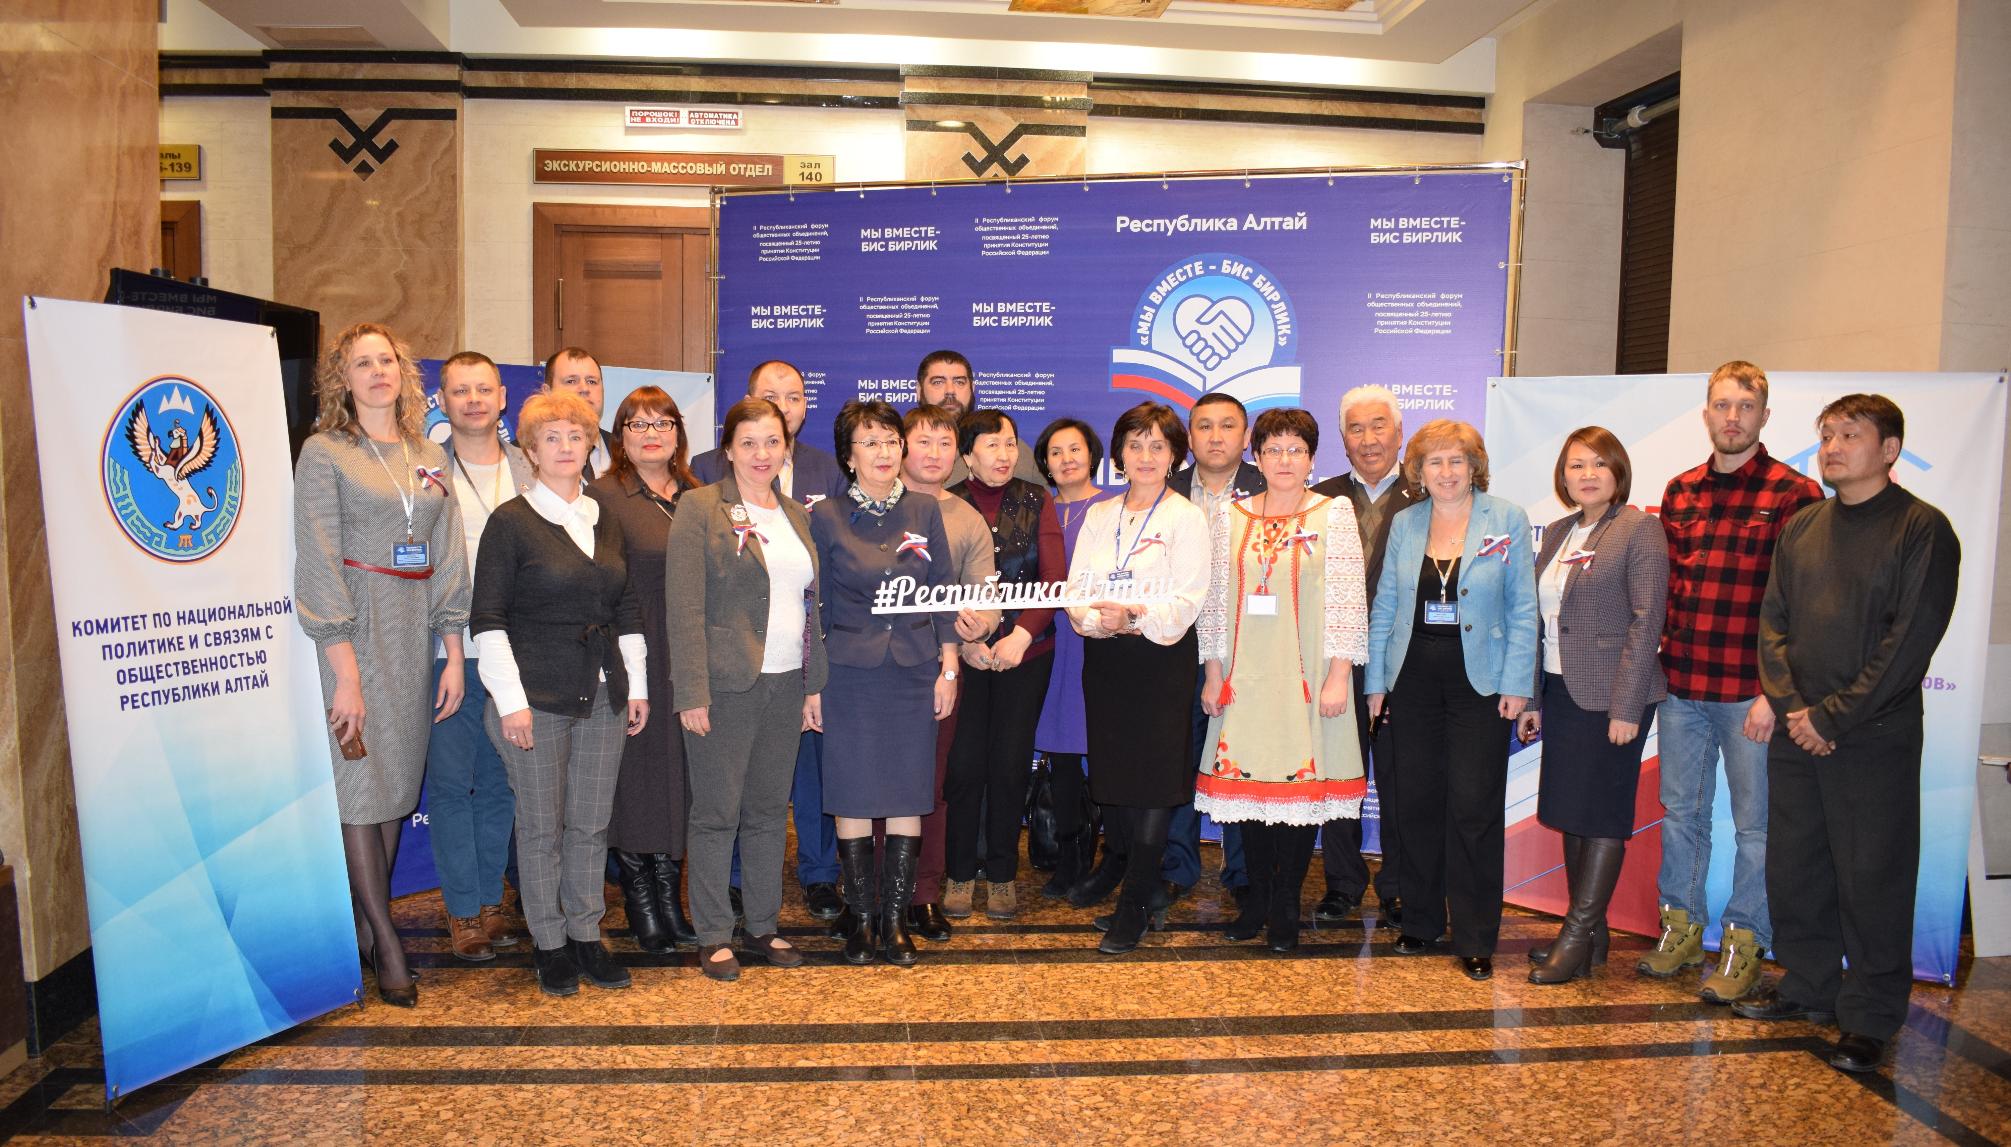  Форум общественных объединений республики открылся в Горно-Алтайске